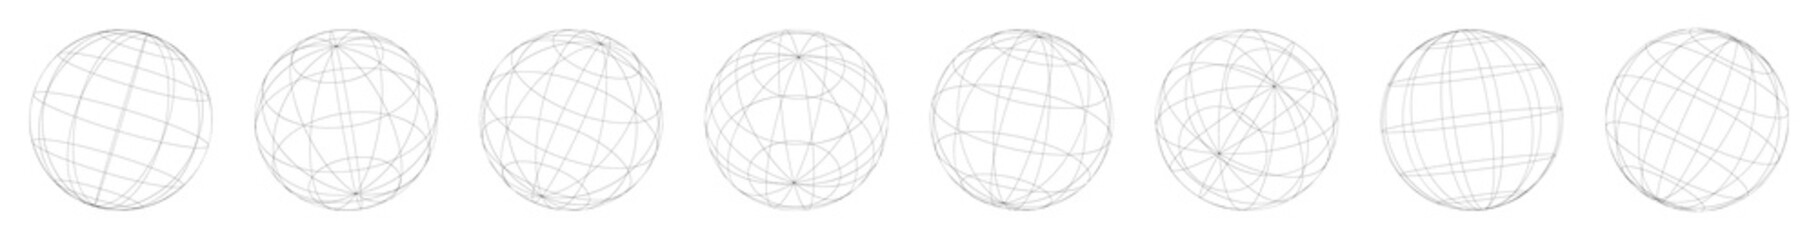 Wireframe, grid, mesh sphere, globe, ball vector illustration set